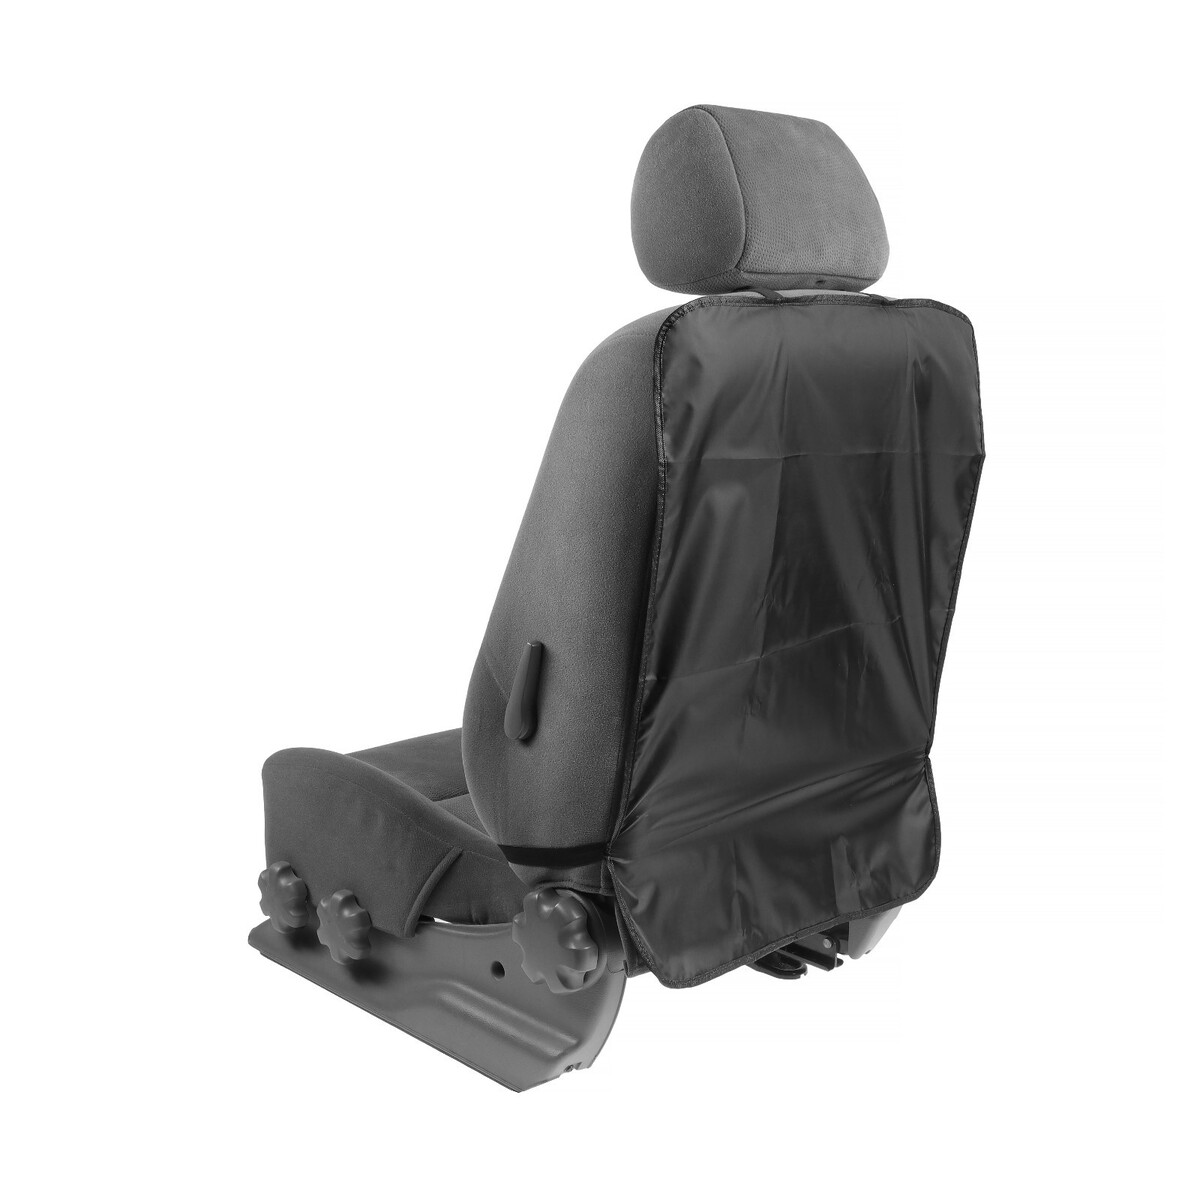 Защитная накидка на переднее сиденье, 64 х 46 см, оксфорд, черный защитная накидка под автокресло 95 х 44 см оксфорд серый